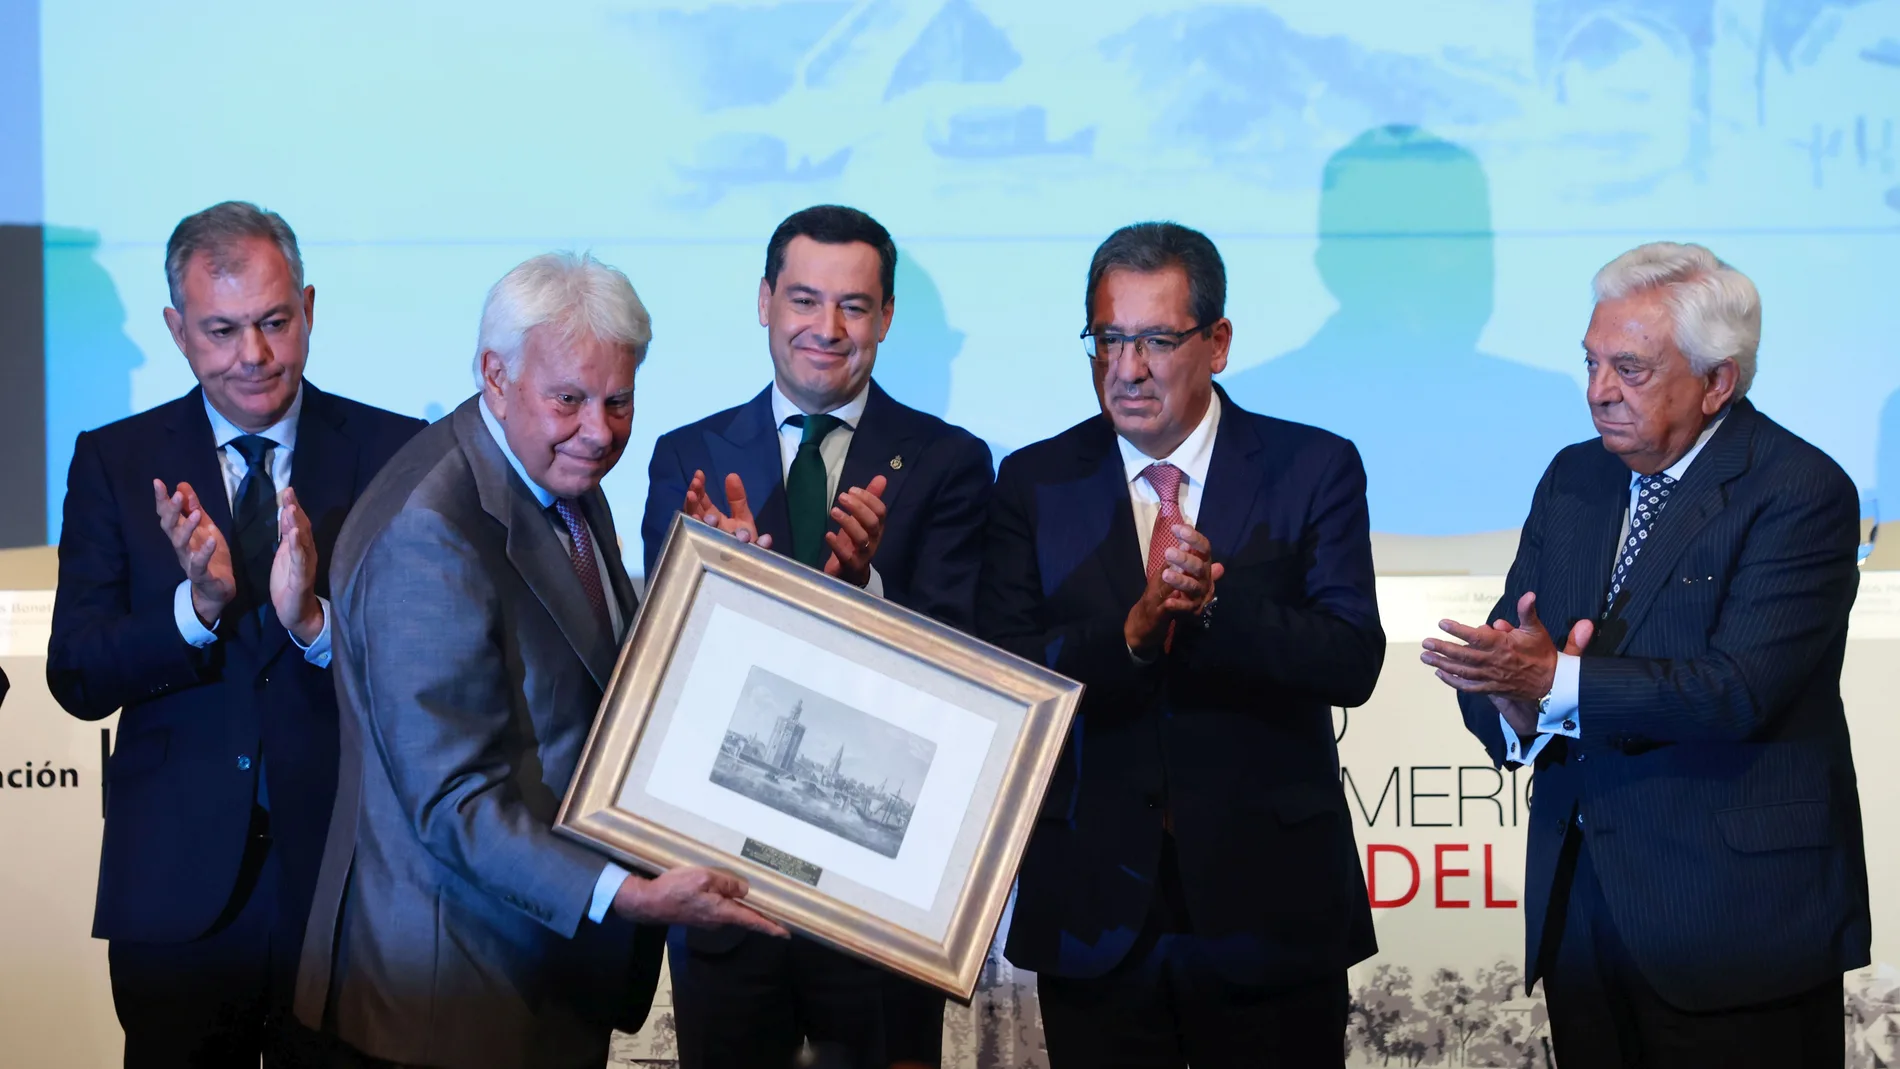  presidente de la Junta de Andalucía, Juanma Moreno, entrega el Premio Iberoamericano Torre del Oro al expresidente del Gobierno Felipe González